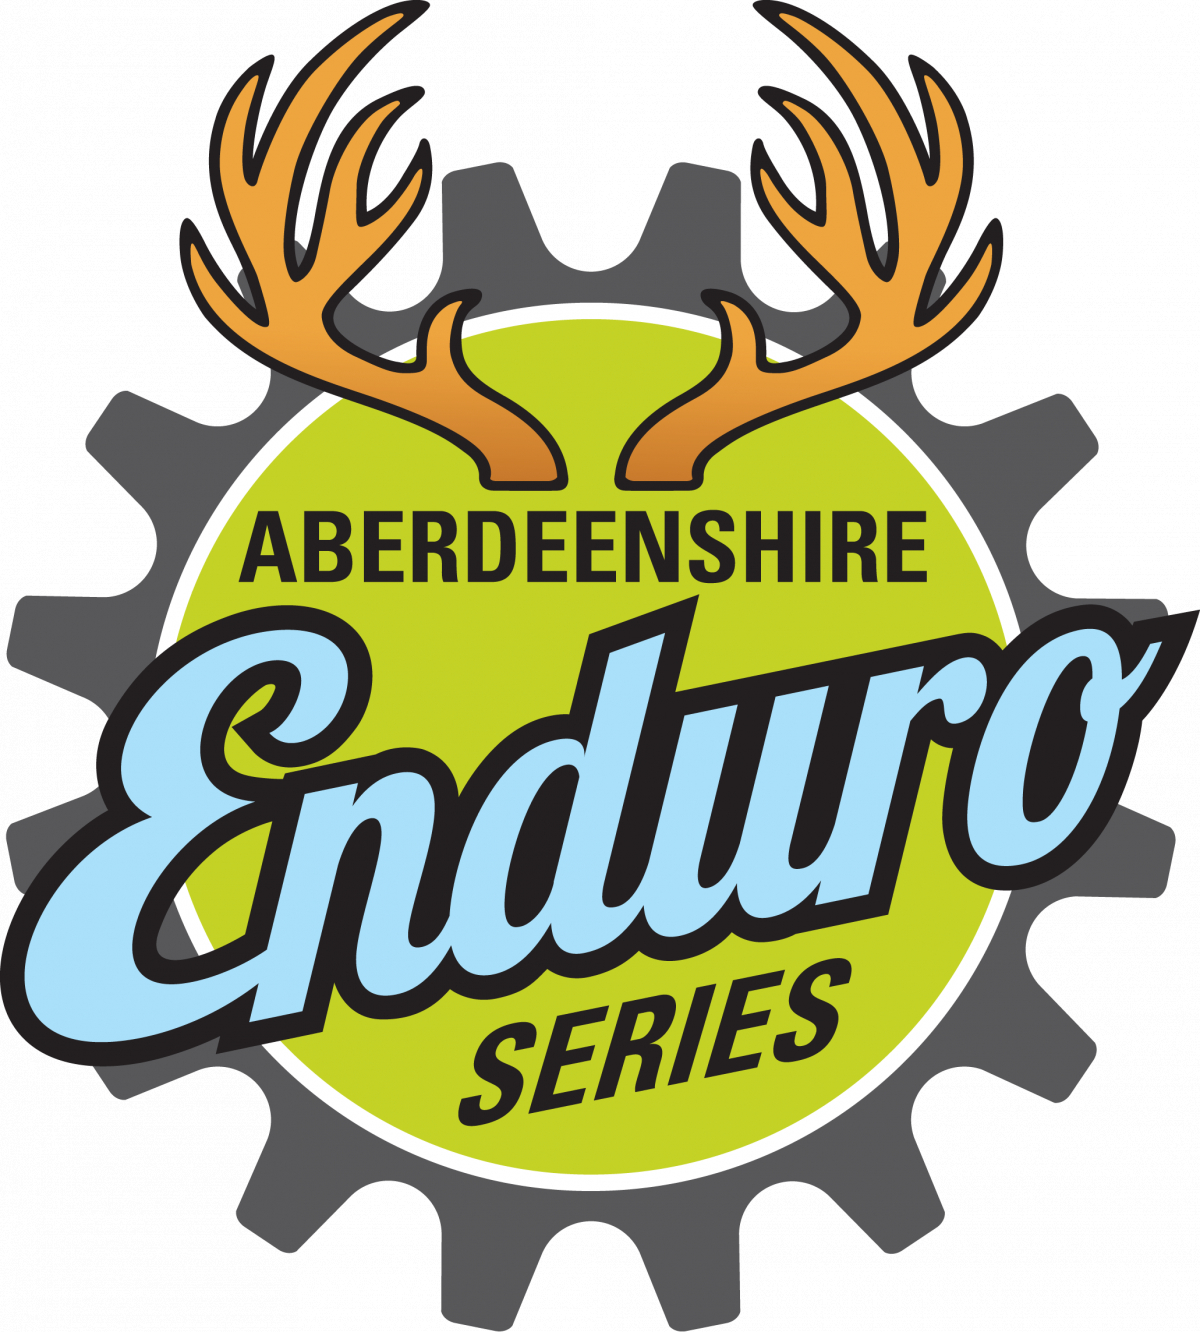 Pitfichie Enduro - Aberdeenshire Enduro Series 2021